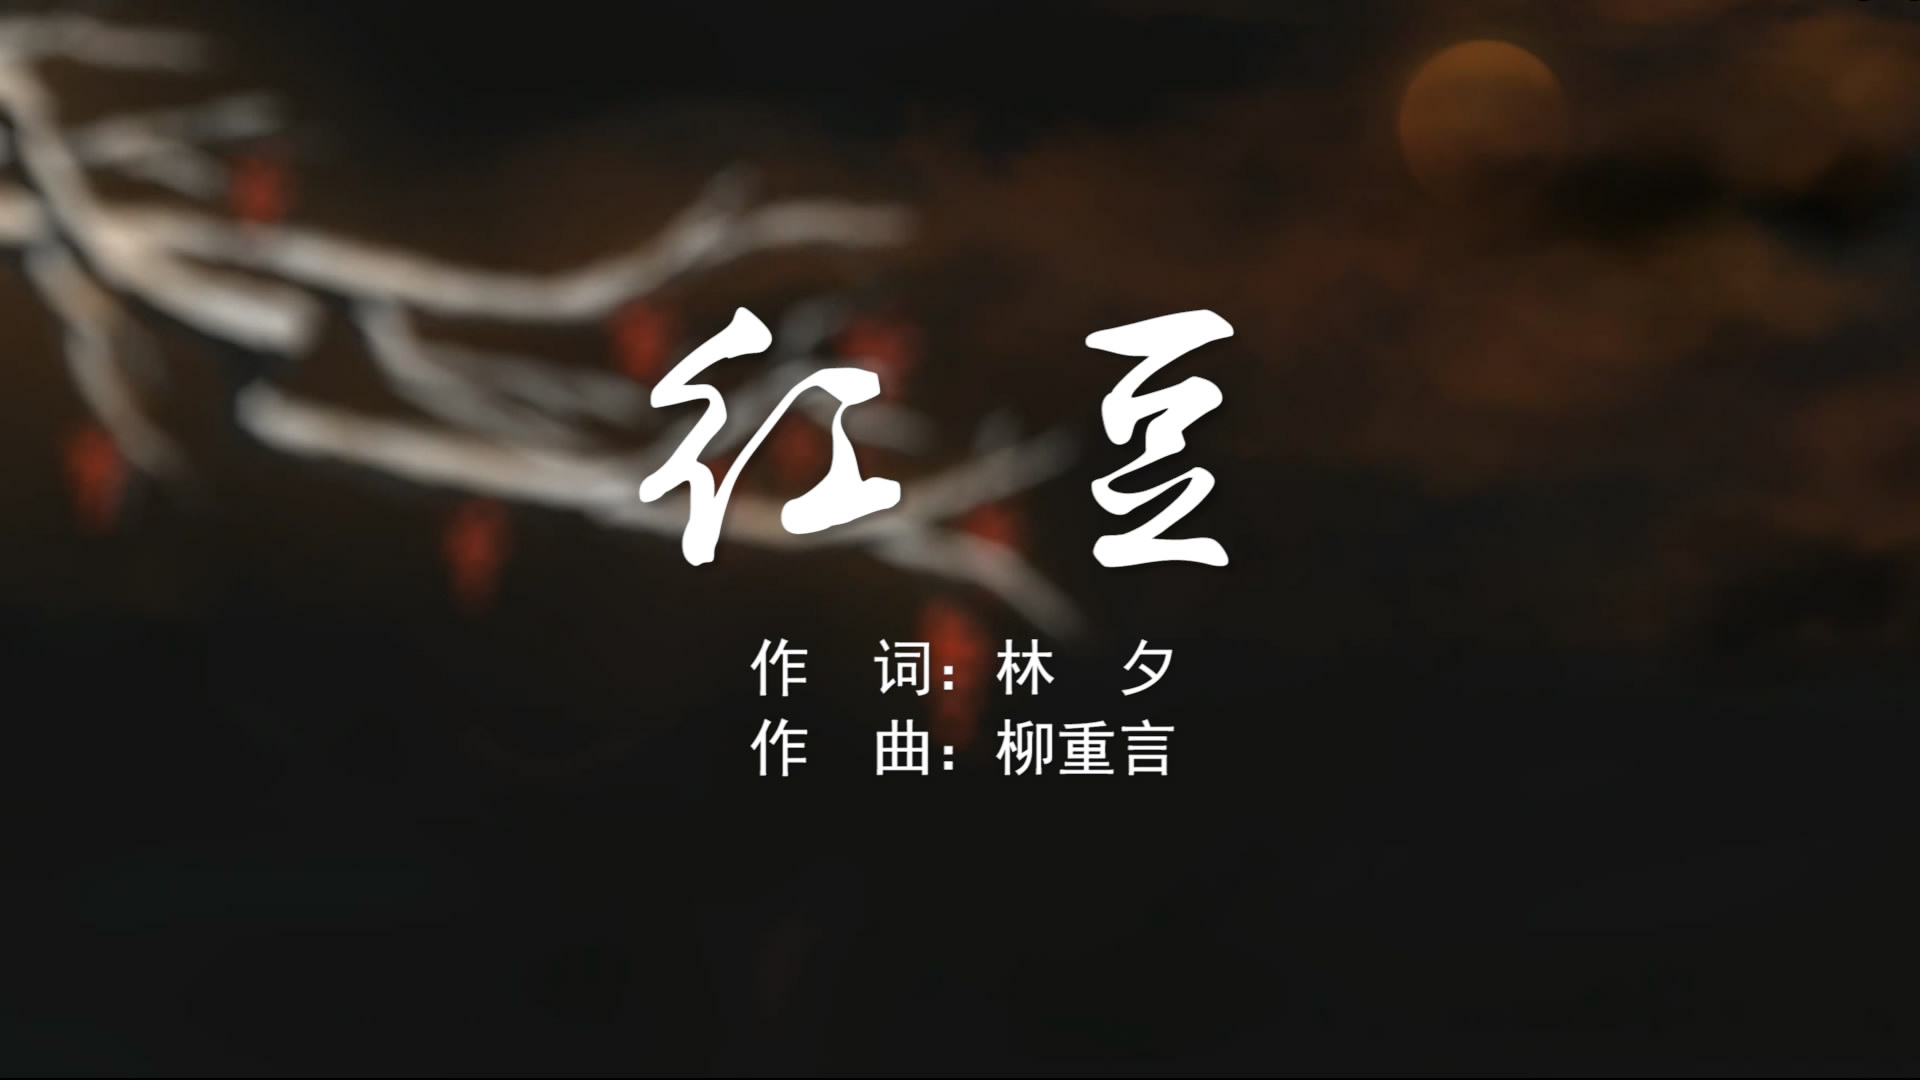 红豆 王菲MV字幕配乐伴奏舞台演出LED背景大屏幕视频素材TV